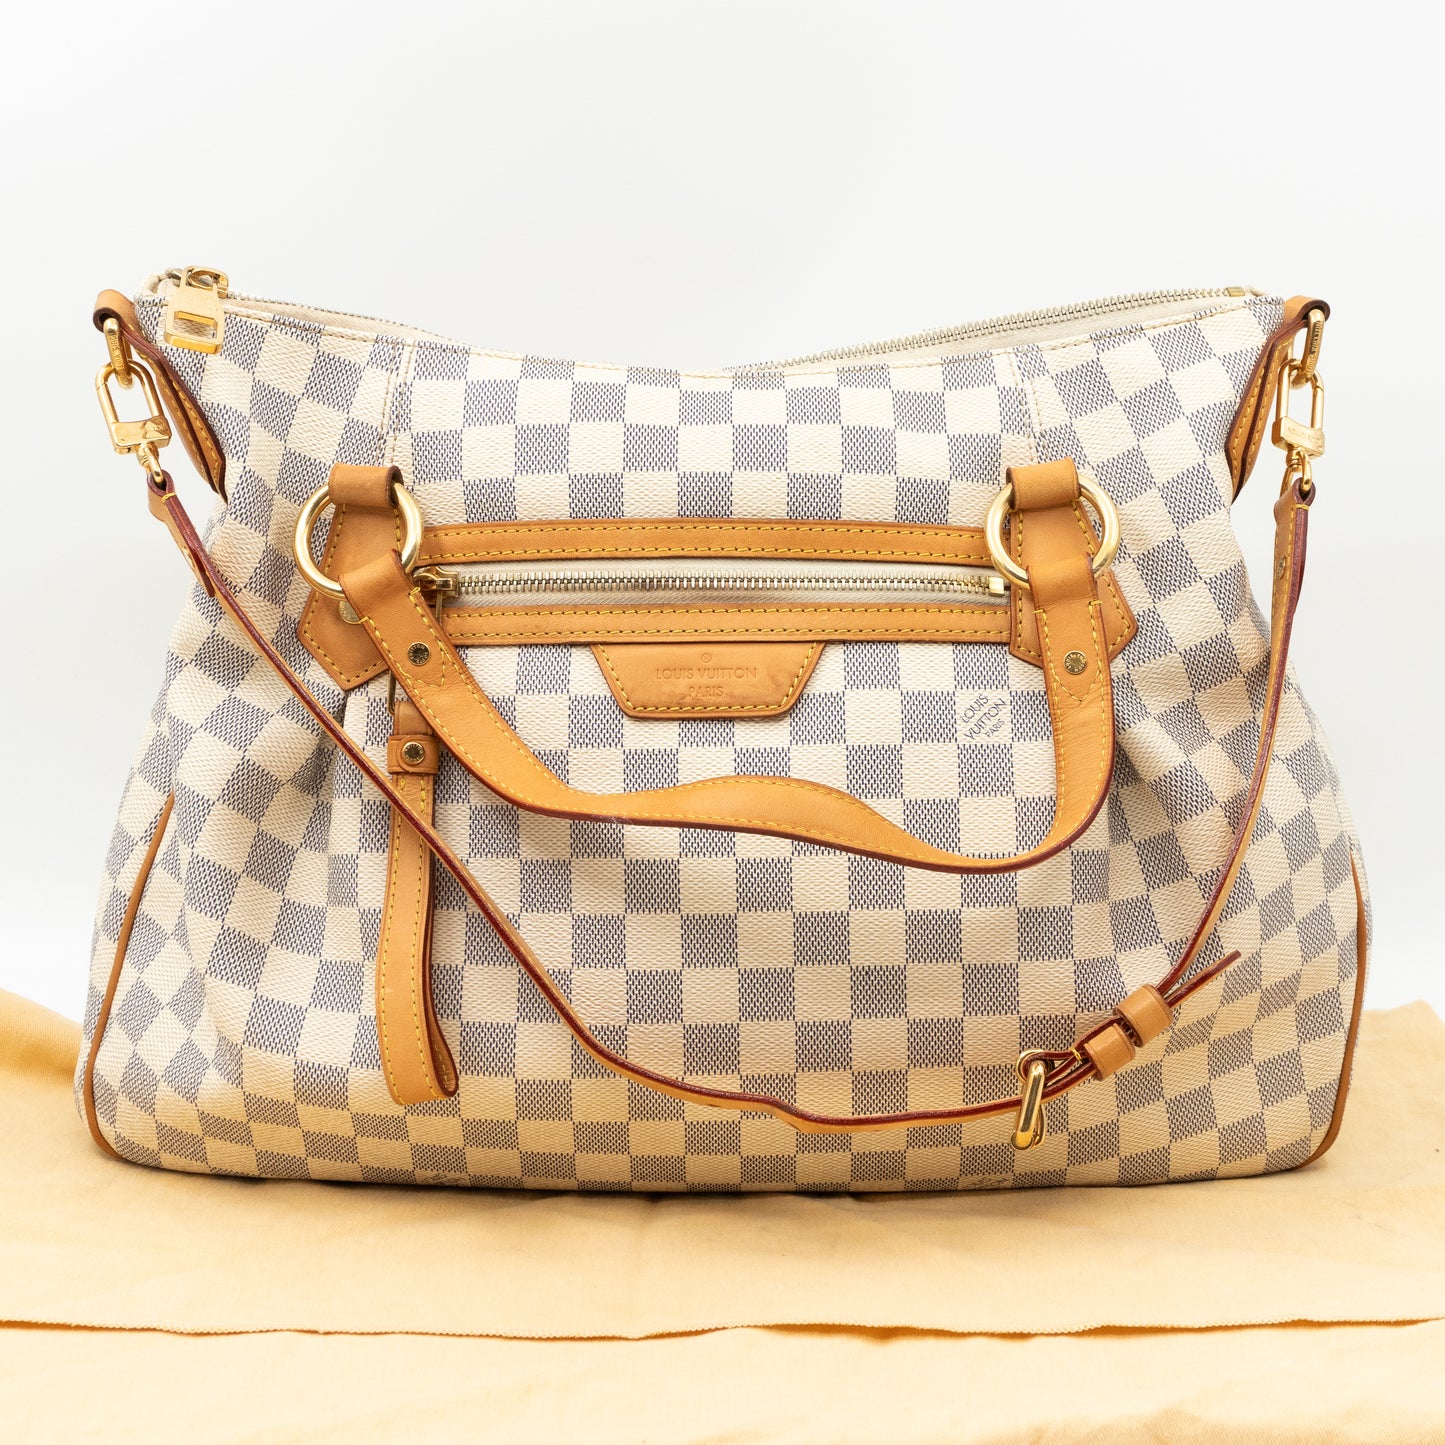 Experience Elegance: Authentic Louis Vuitton Evora MM Handbag Shop Now